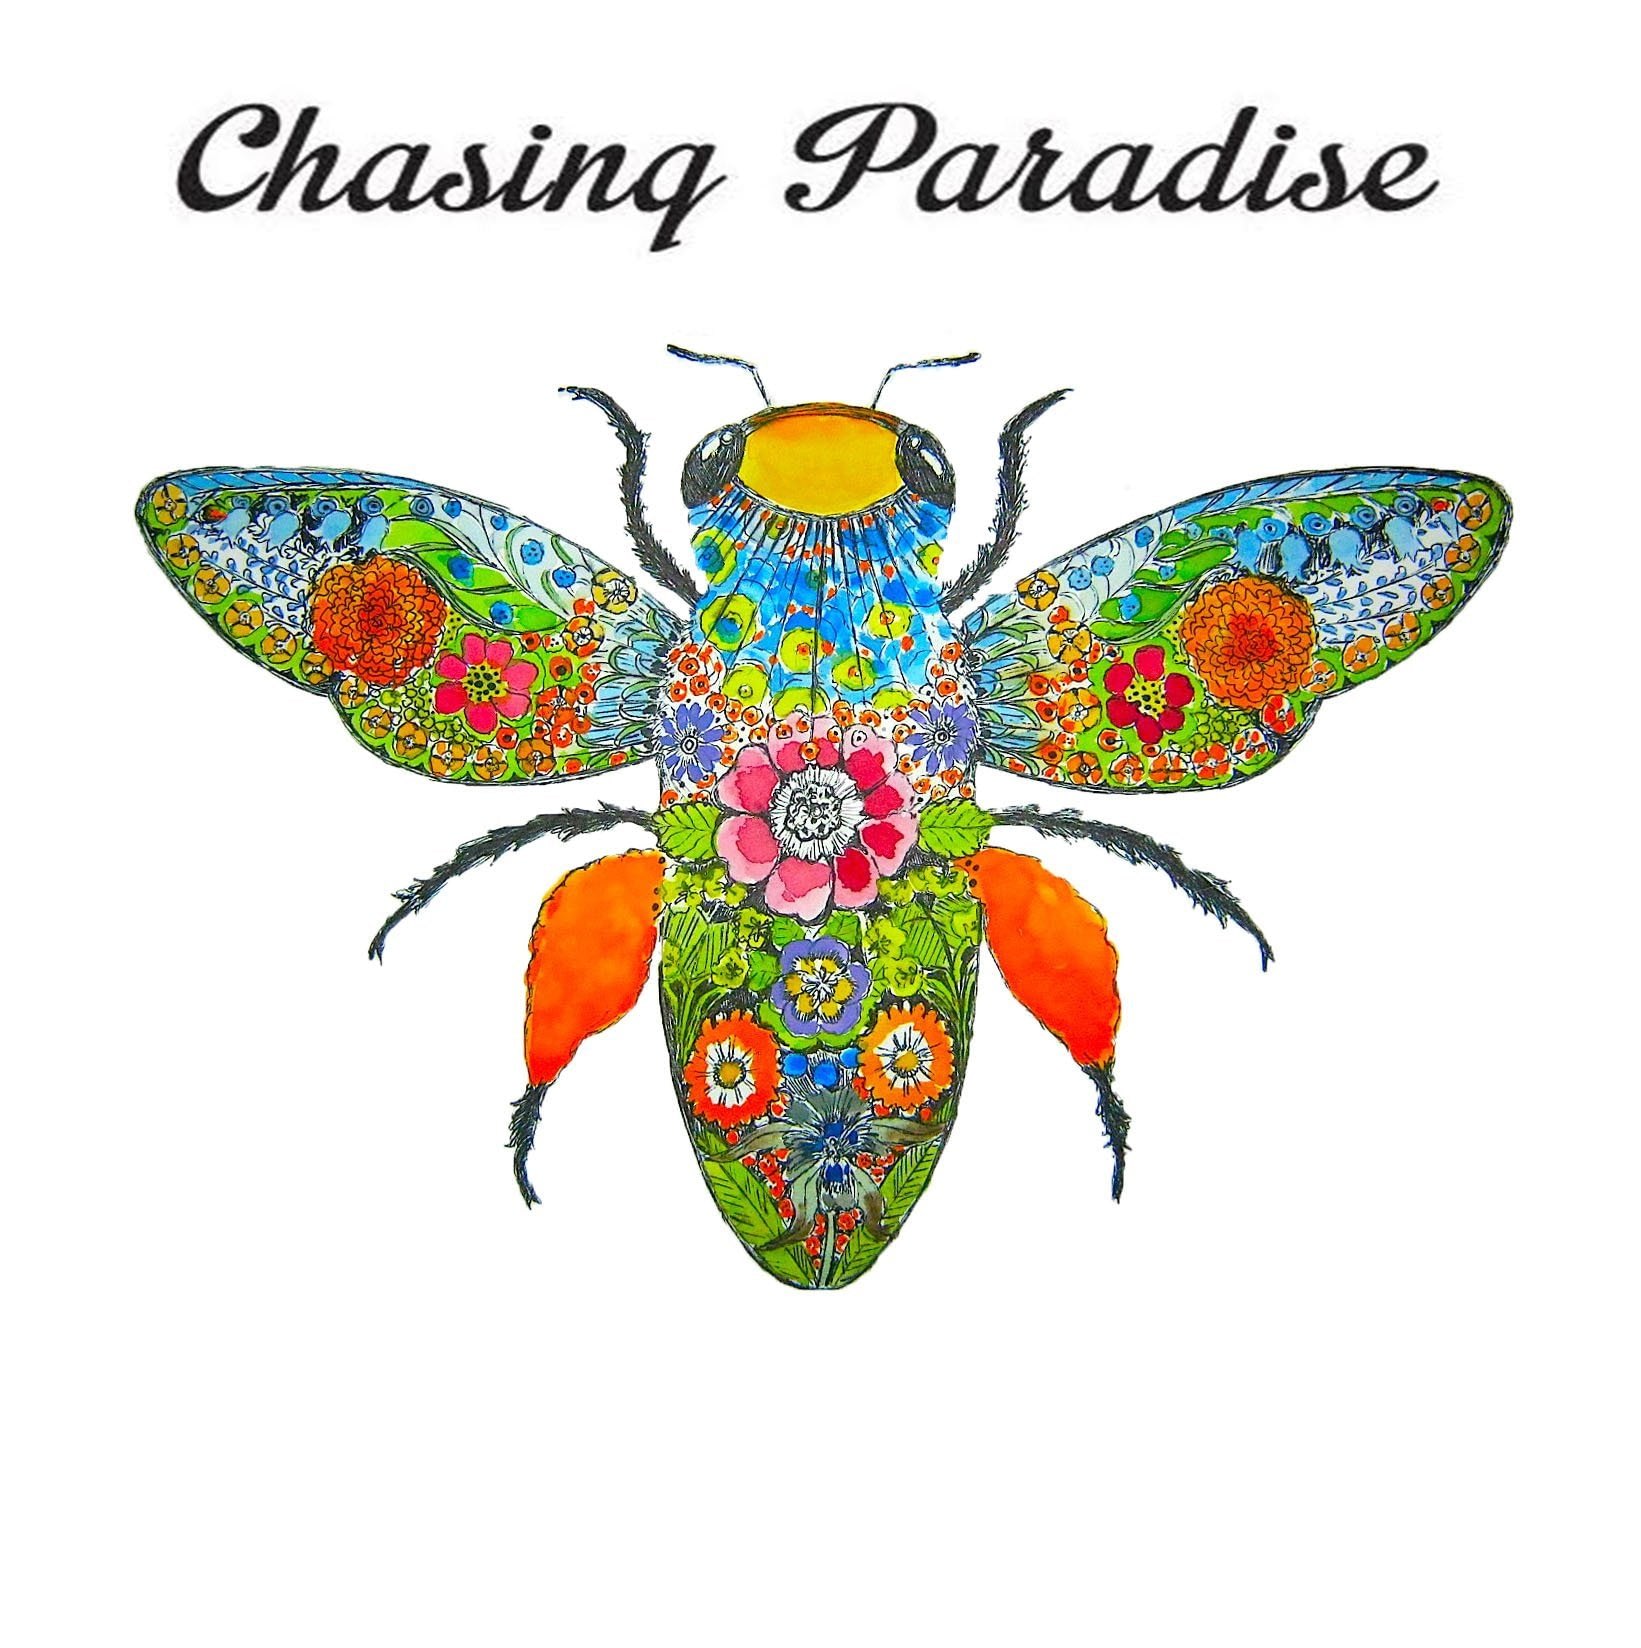 Chasing Paradise